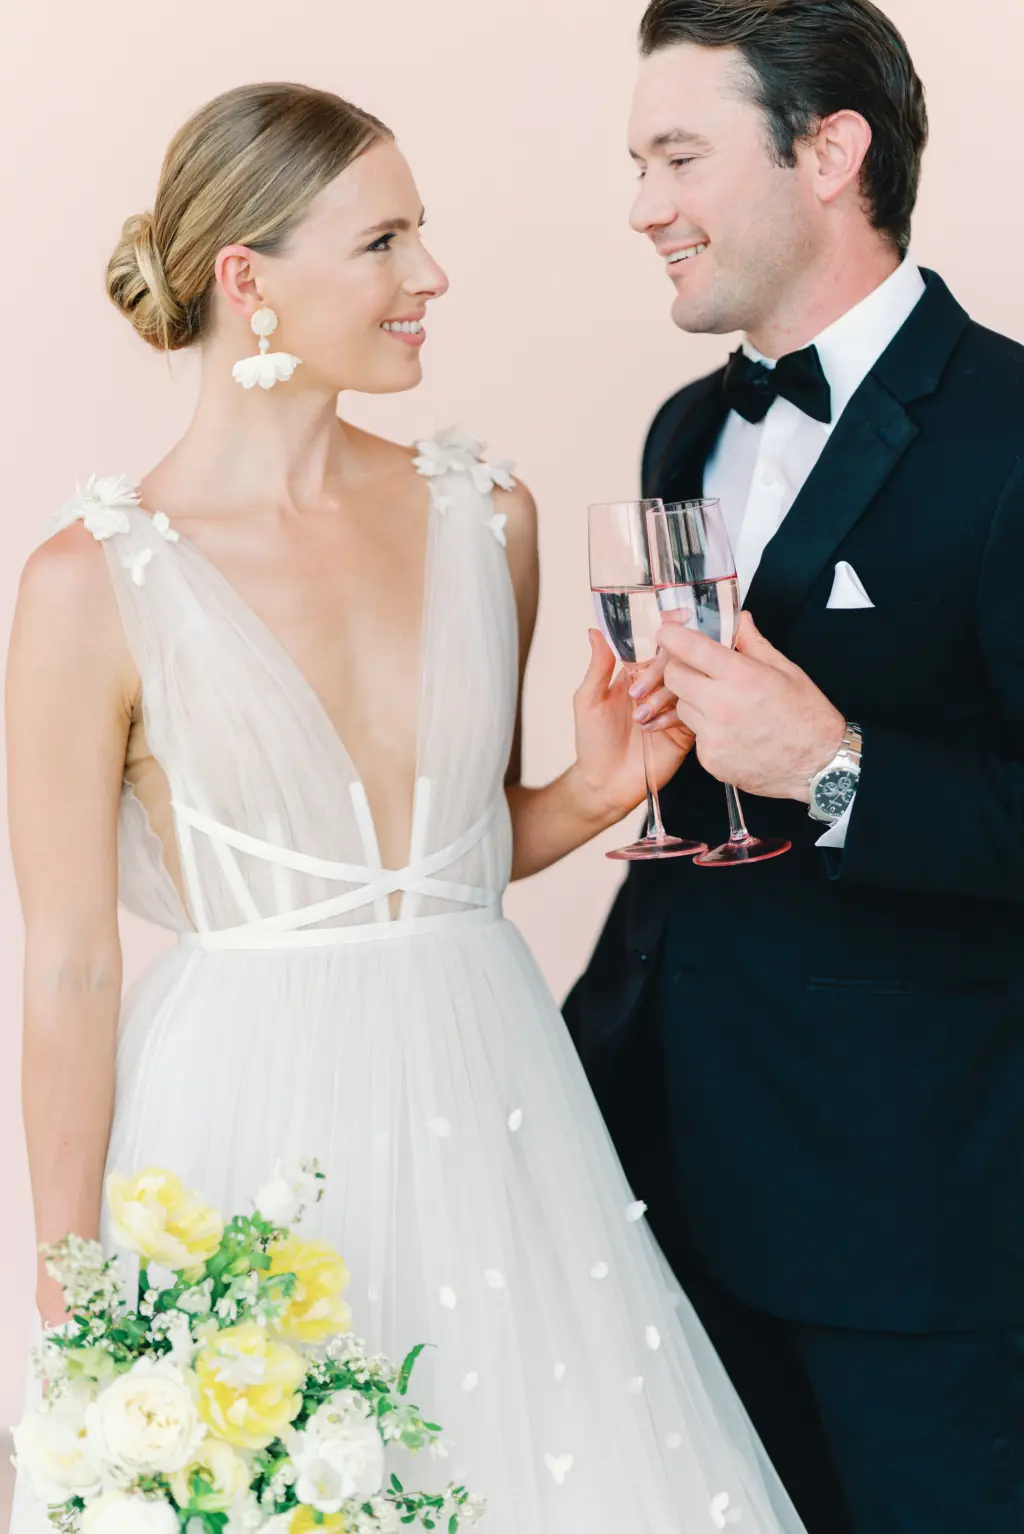 Bride and Groom Sparkling Rose Champagne Toast Celebration Wedding Portrait